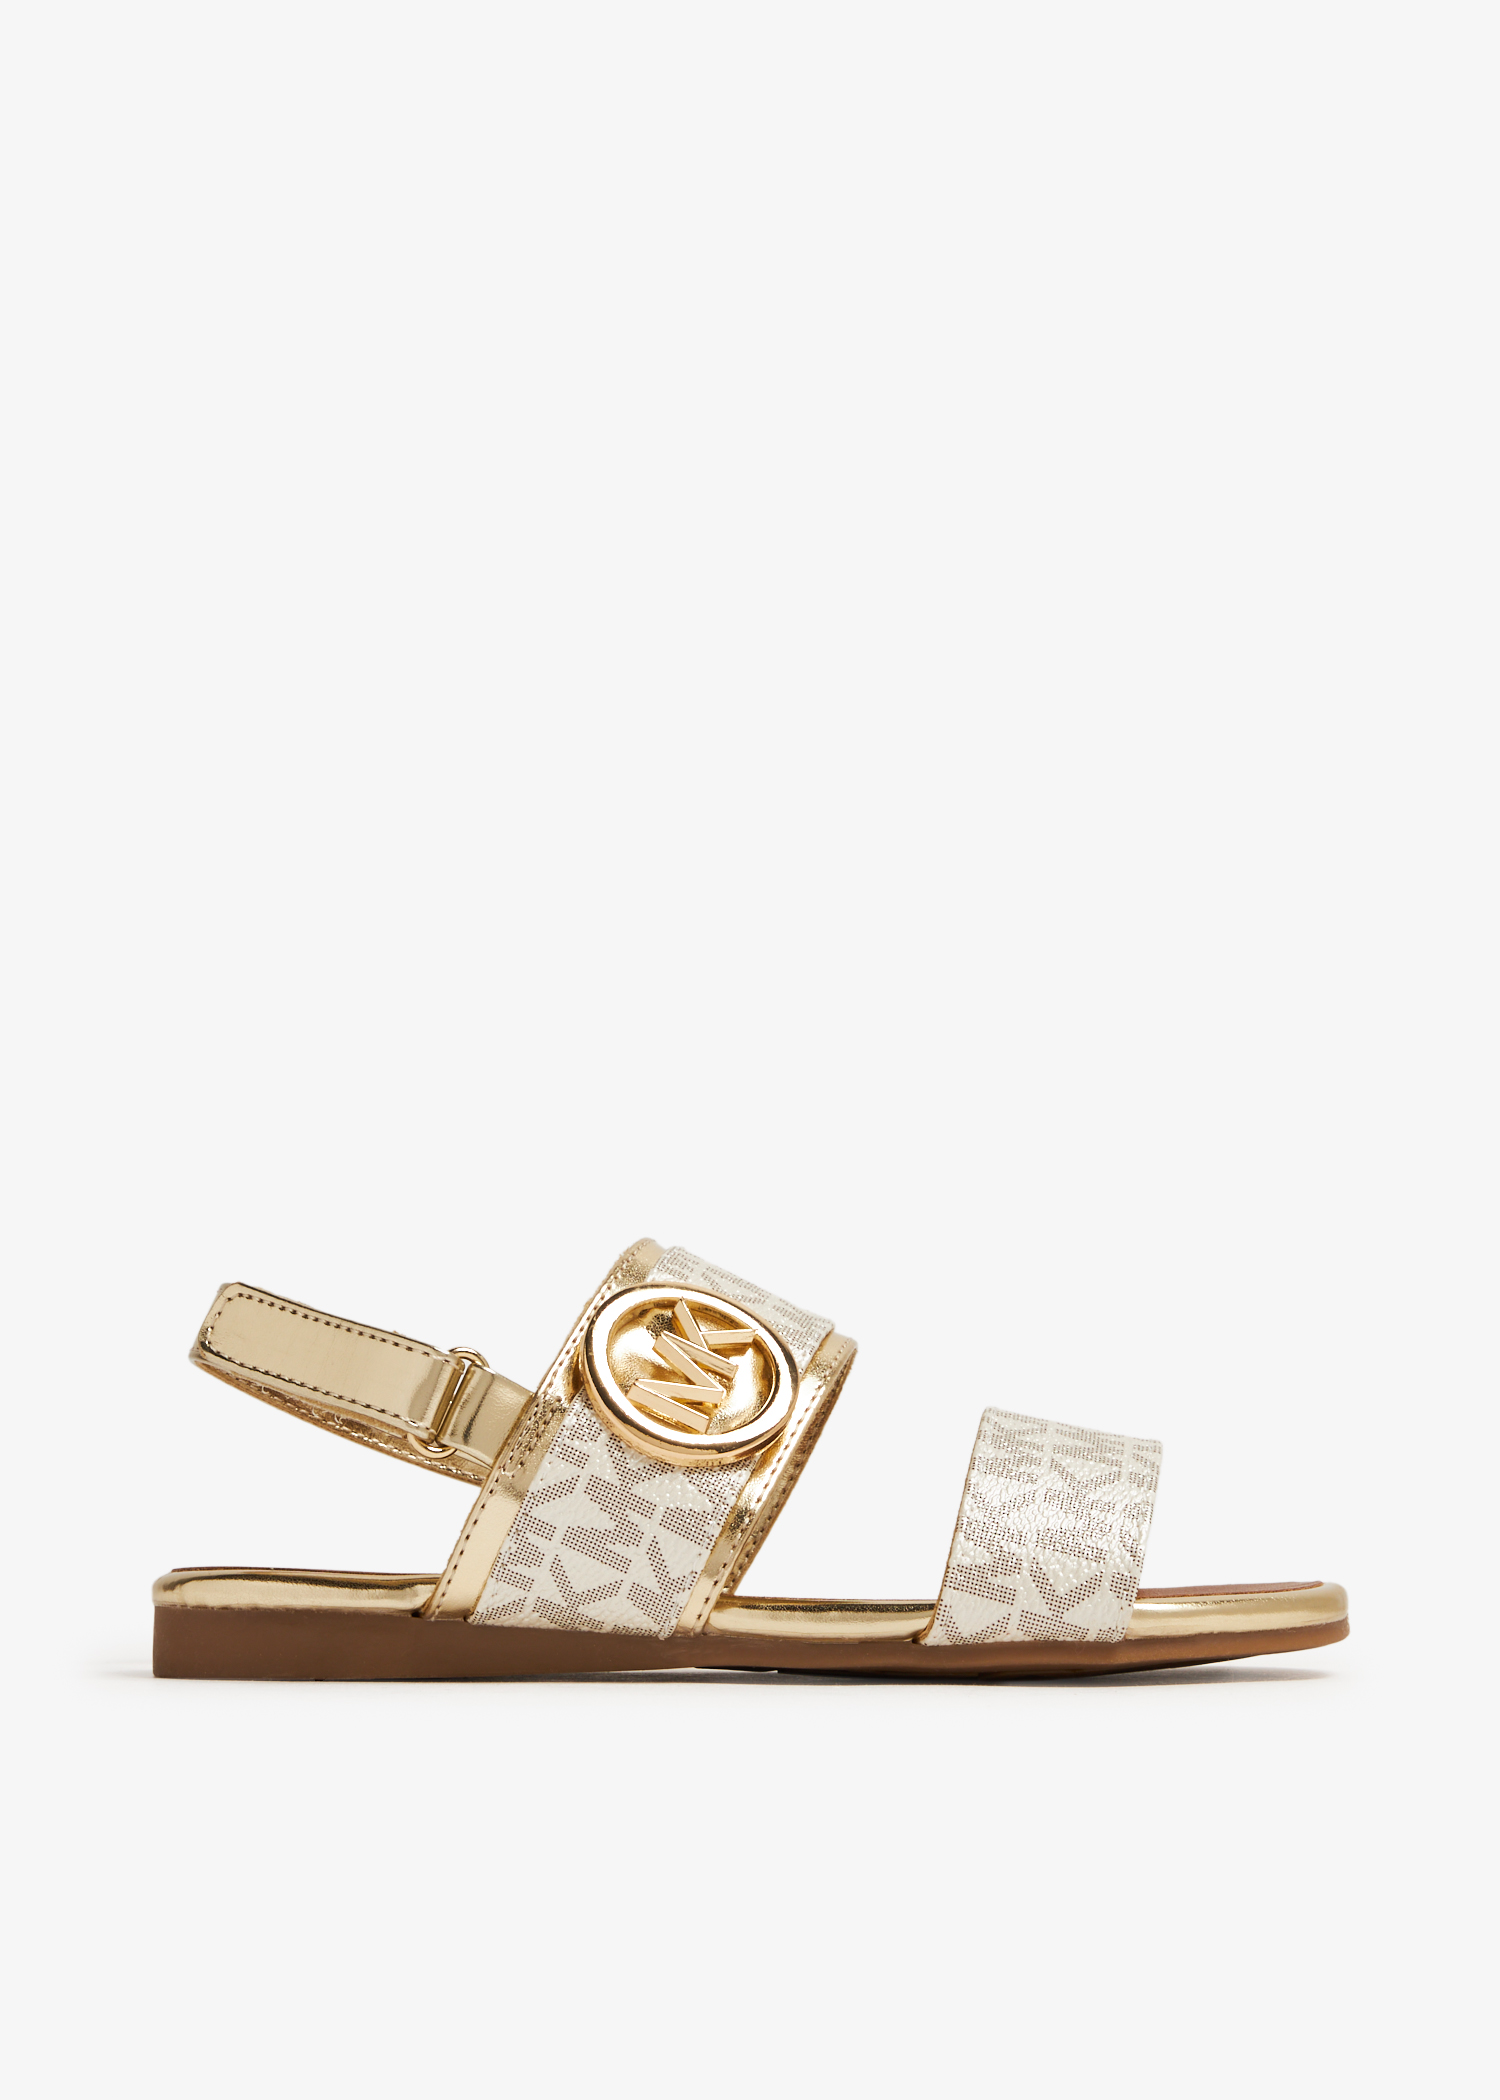 Michael Kors Sydney Kenzie 2 sandals for Girl - Gold in UAE 